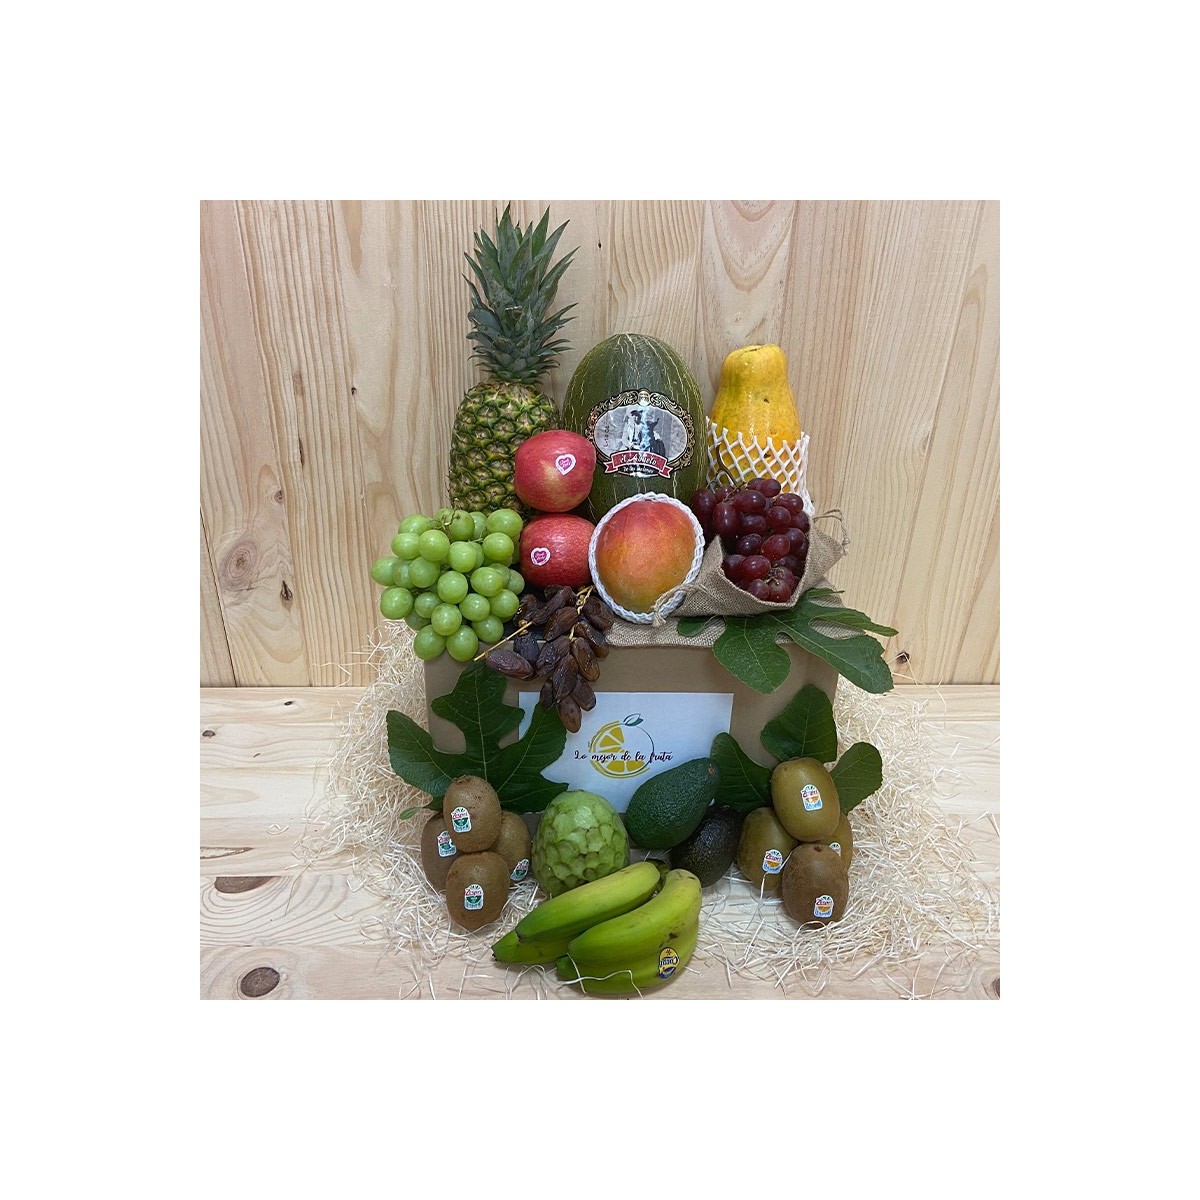 Pack frutas tropicales - Packs Frutas y Verduras -1- Lo mejor de la fruta